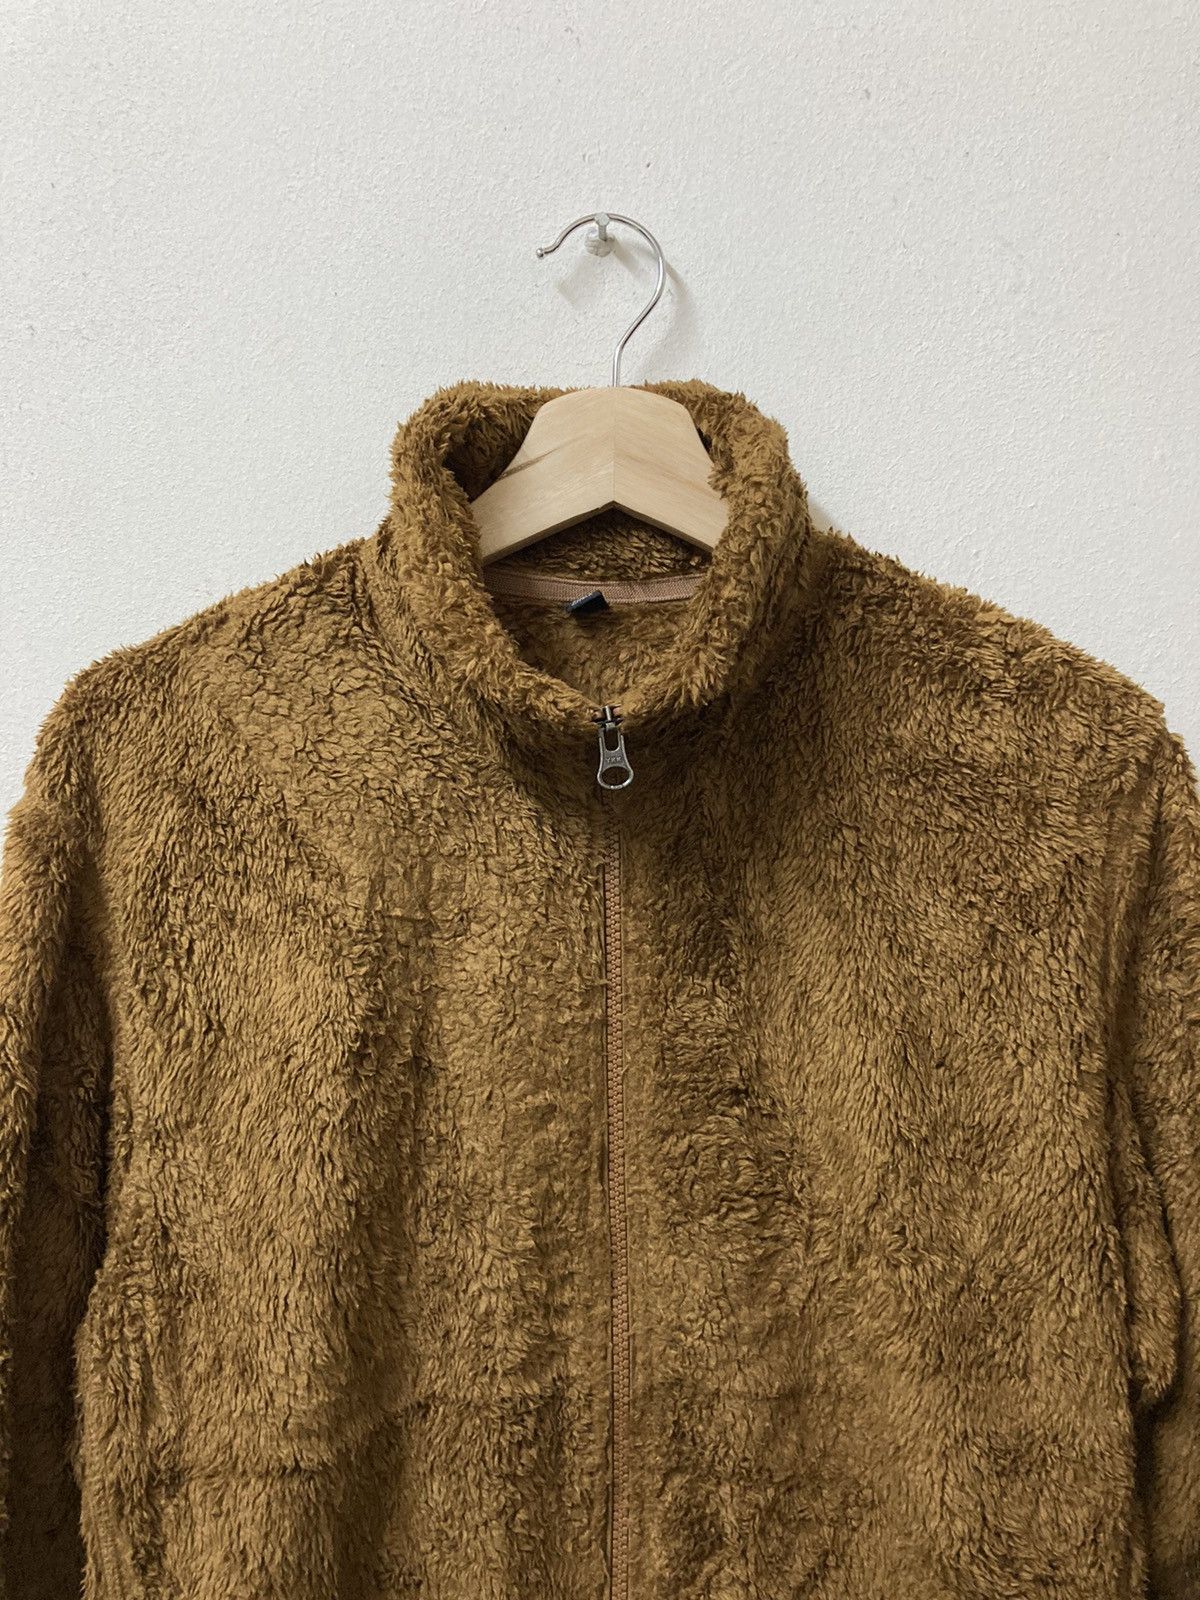 Uniqlo Fluffy Yarn Fleece Full Zipper Long Sleeve Jacket - 4